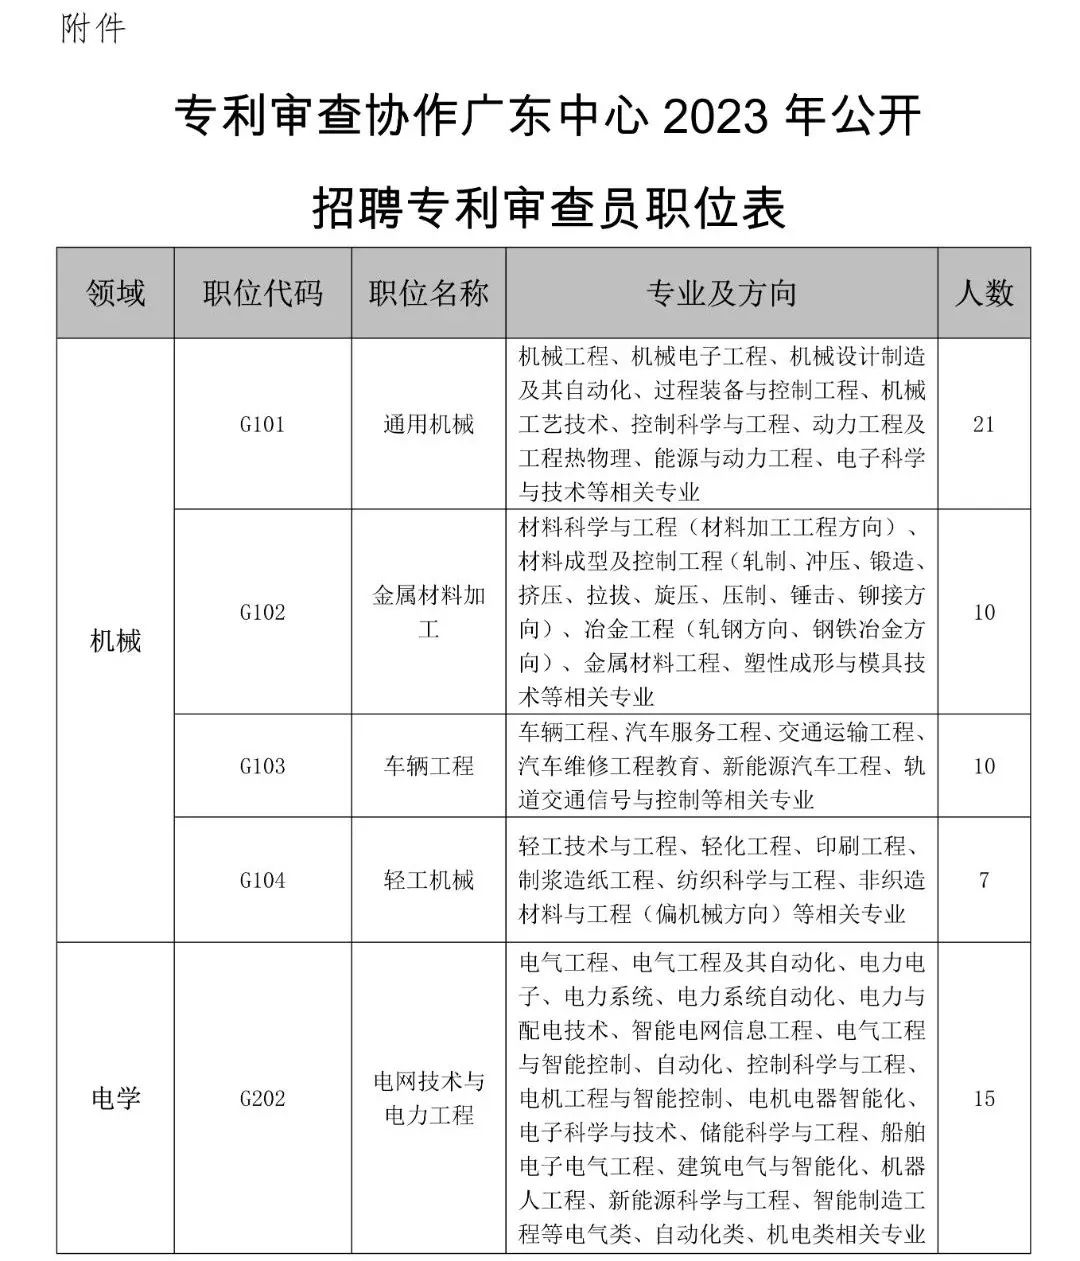 聘！专利审查协作广东中心2023年度专利审查员春季补充招聘